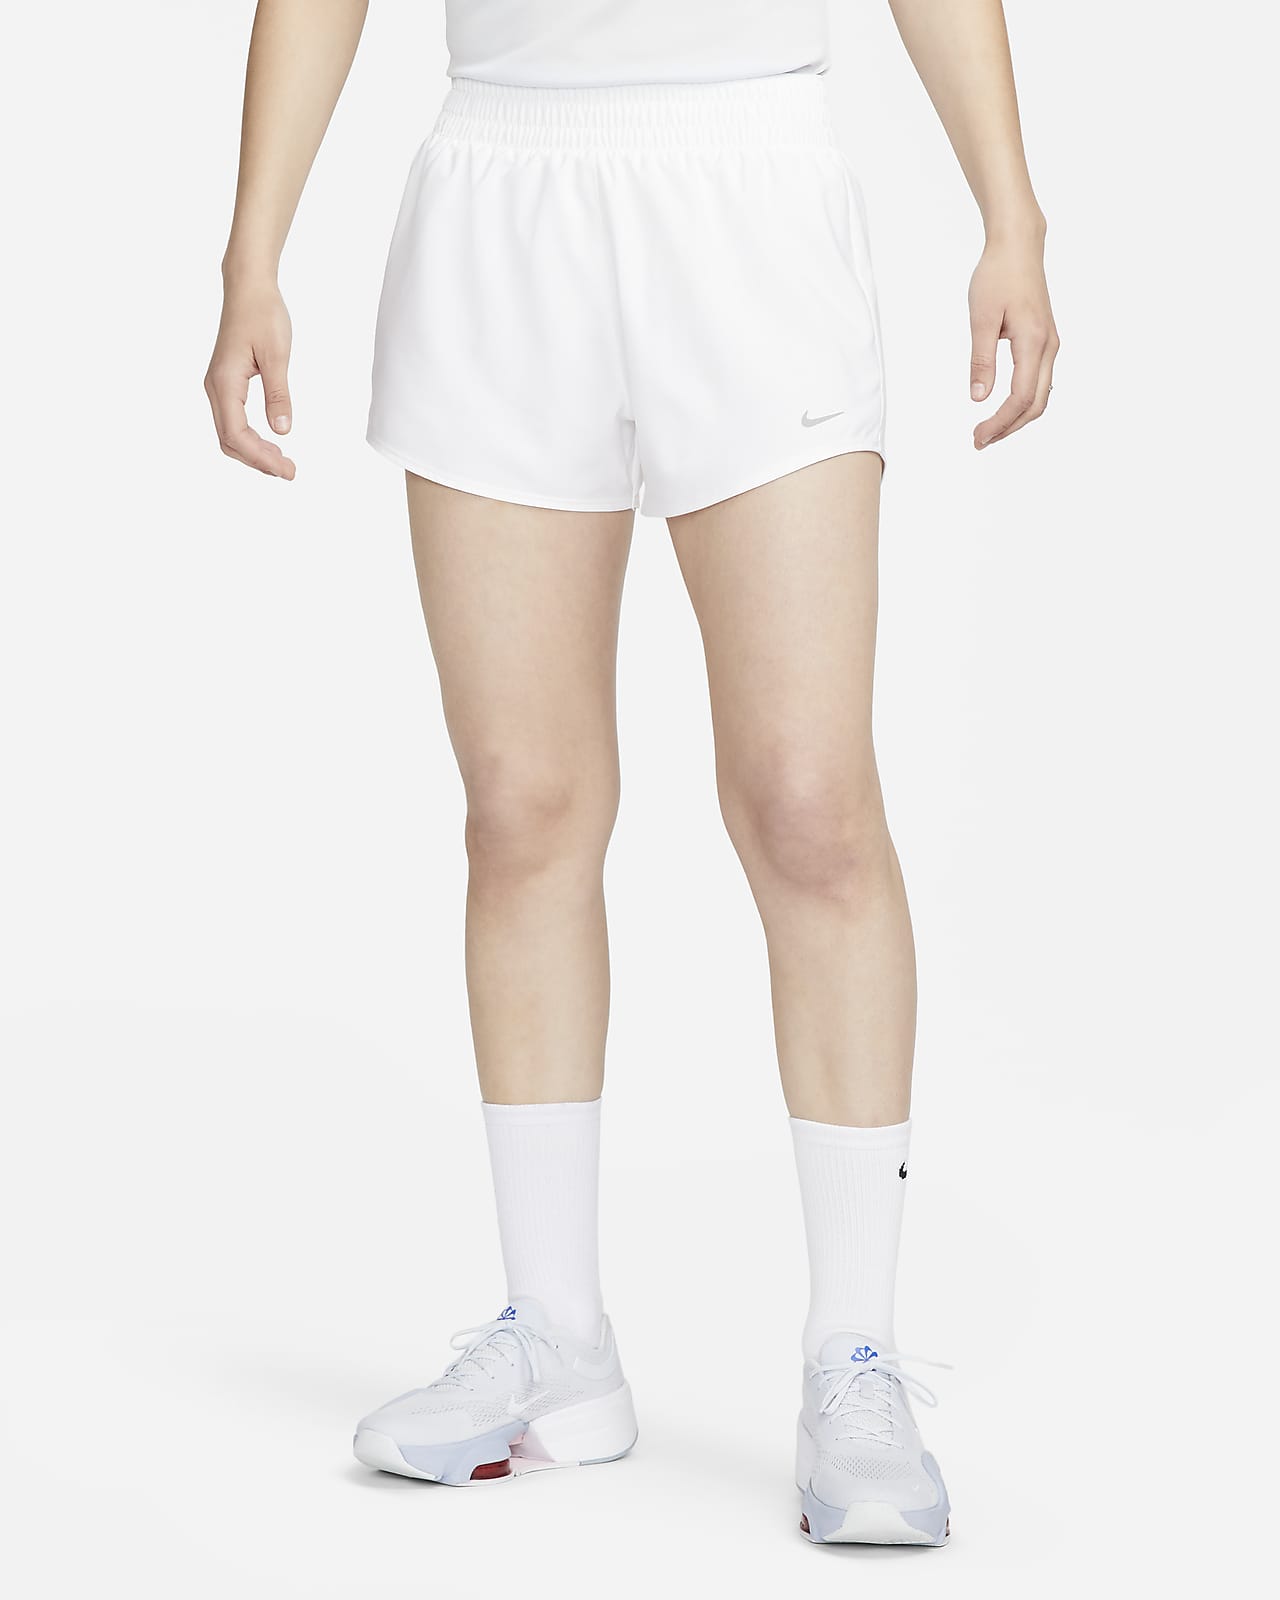 Shorts con forro de ropa interior Dri-FIT de tiro alto de 8 cm para mujer Nike One